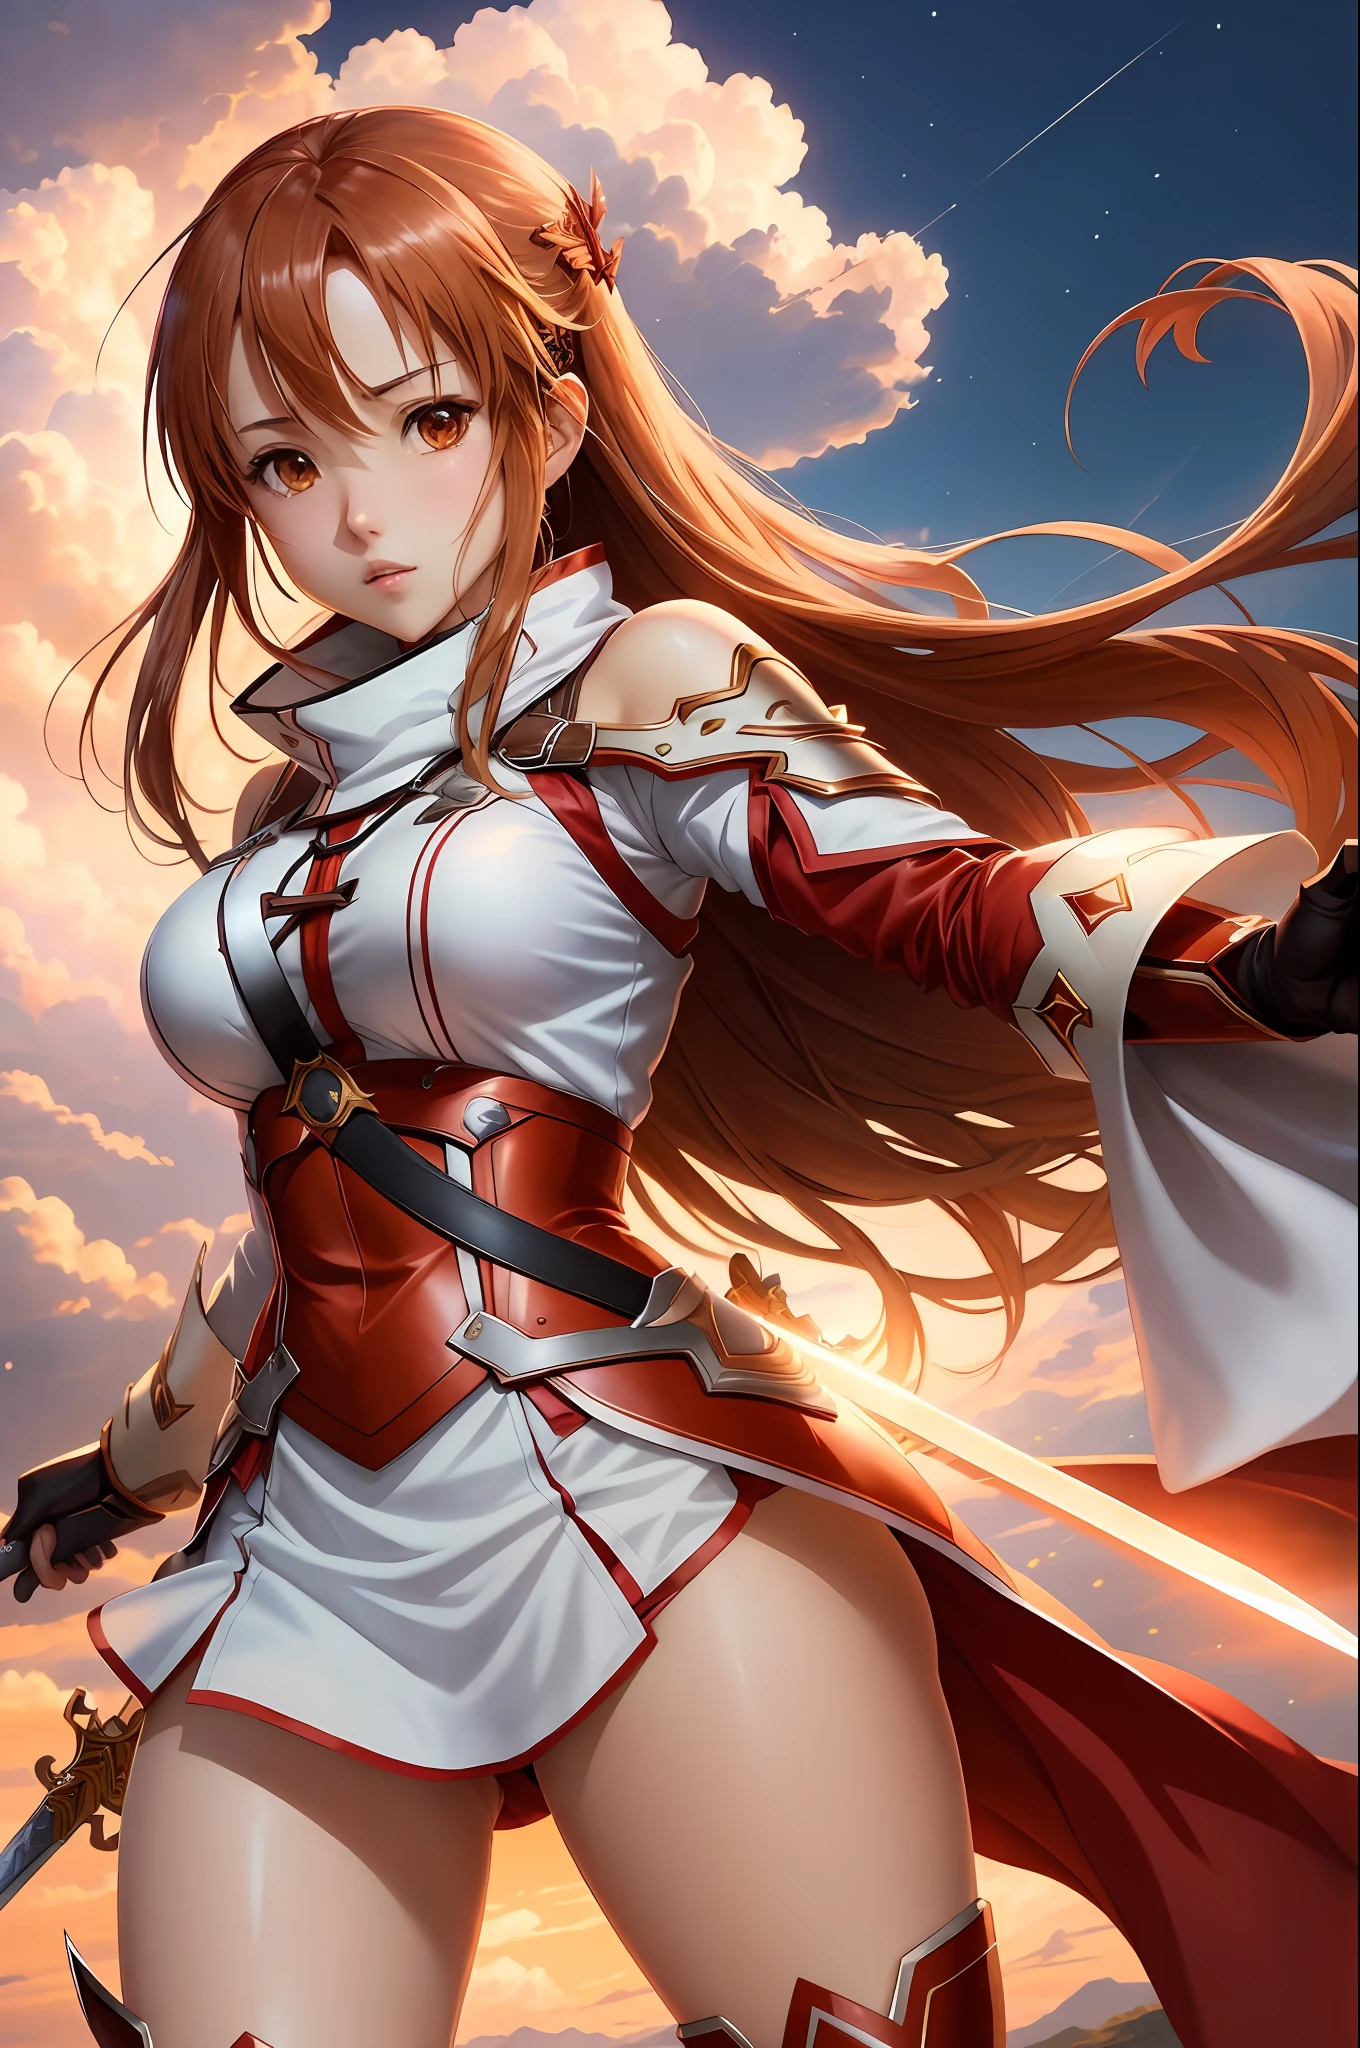 (สไตล์: อะนิเมะ, คุณภาพดีที่สุด), อาสึนะ ยูกิ จาก Sword Art Online ในท่าที่มีชีวิตชีวาด้วยดาบของเธอ, ลักษณะใบหน้าที่โดดเด่น, และชุดที่สวยงาม. ฉากนี้มีผลกระทบต่อภาพที่โดดเด่น, reminiscent of the สไตล์ of Oh! ยอดเยี่ยม. หน้าอกใหญ่